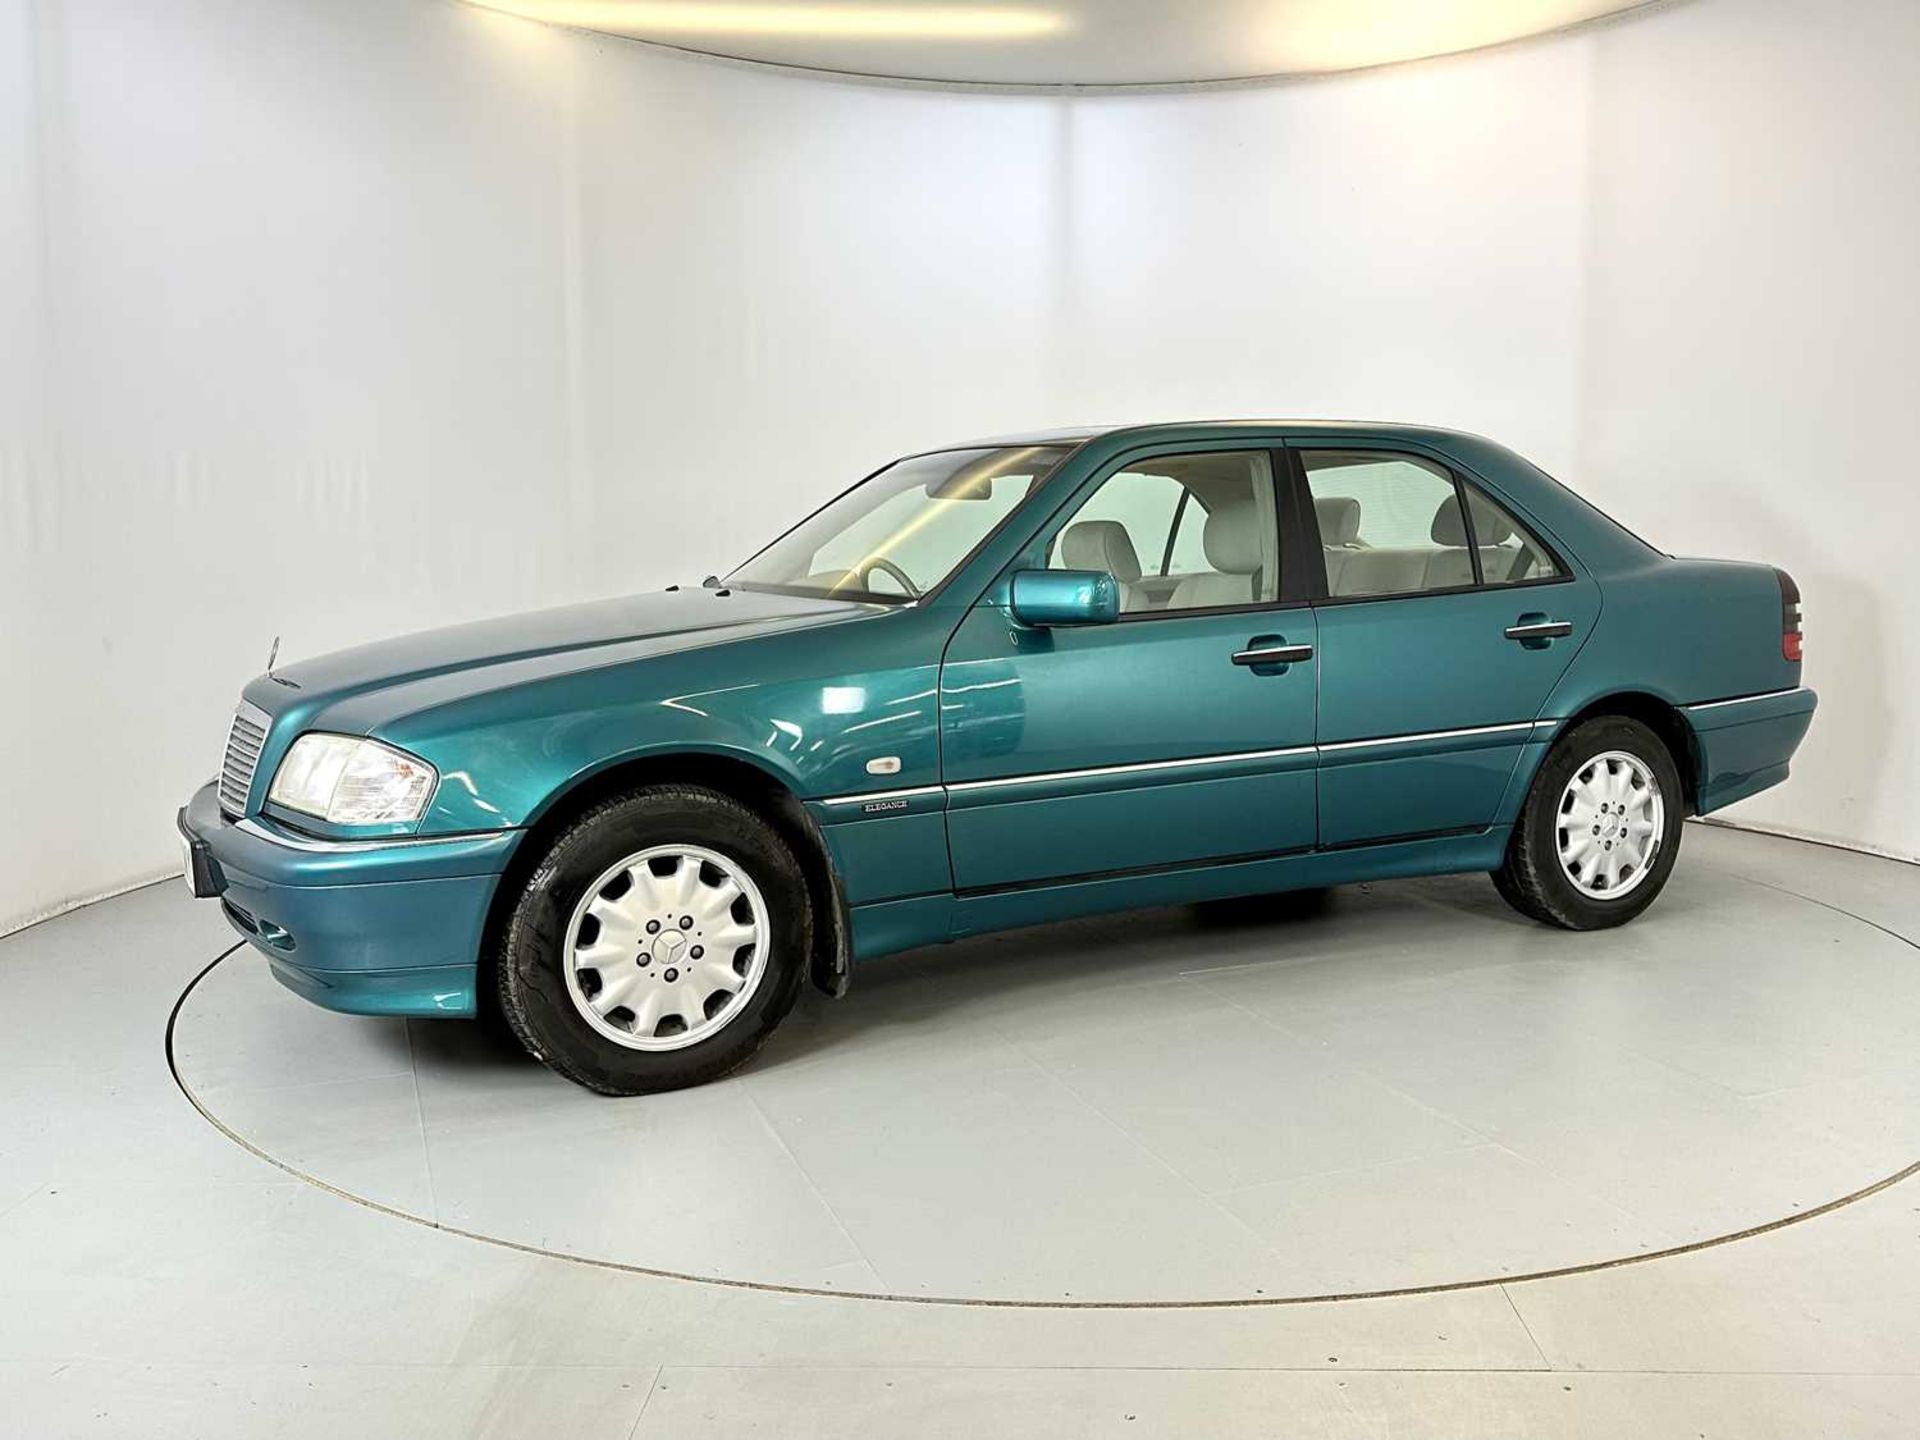 1998 Mercedes-Benz C200 - Image 4 of 34